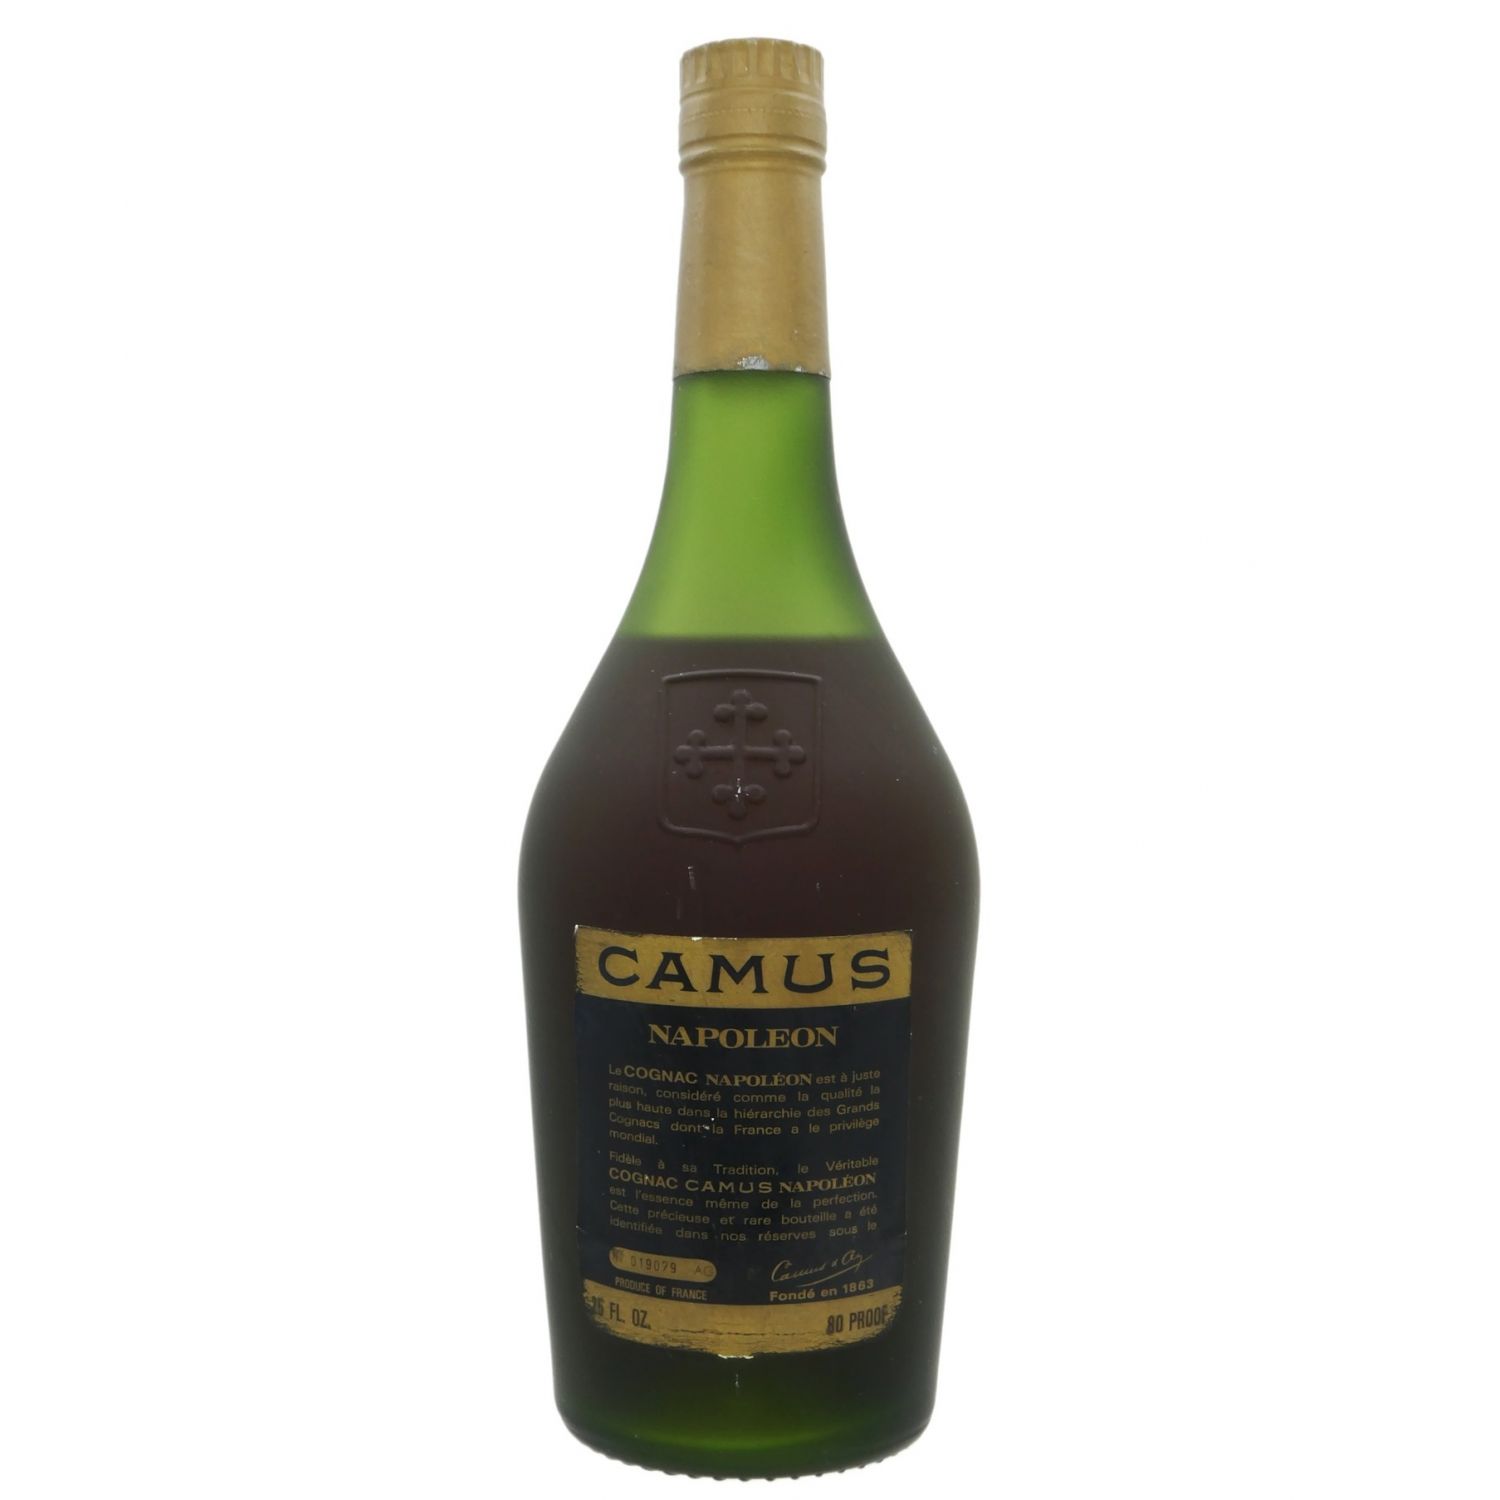 CAMUS (カミュ) NAPOLEON (ナポレオン) コニャック 740ml 40% 旧ボトル 